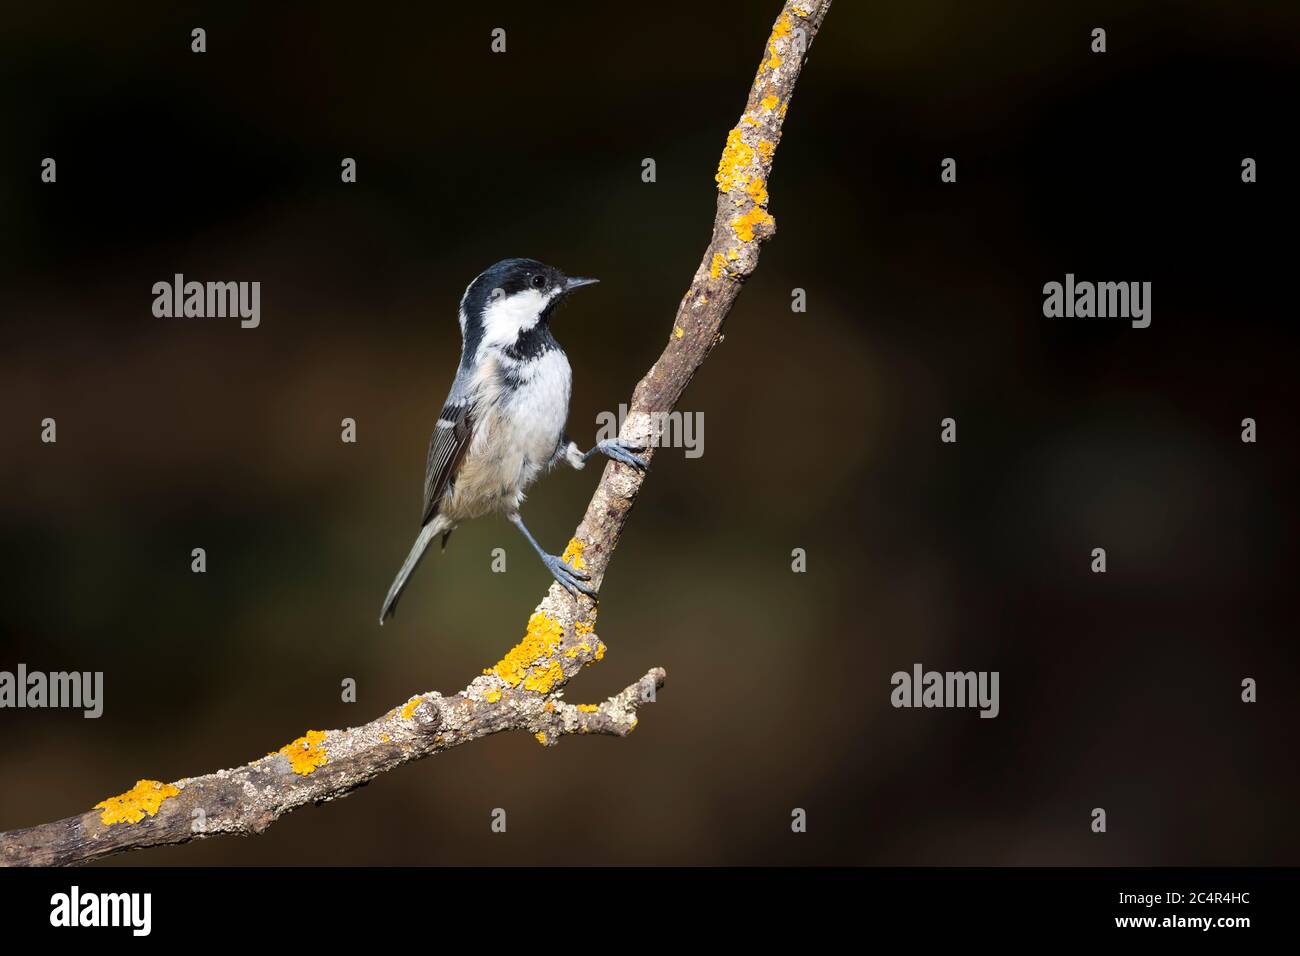 Cute little bird. Green nature background. Park, garden forest bird: Coal tit. Stock Photo